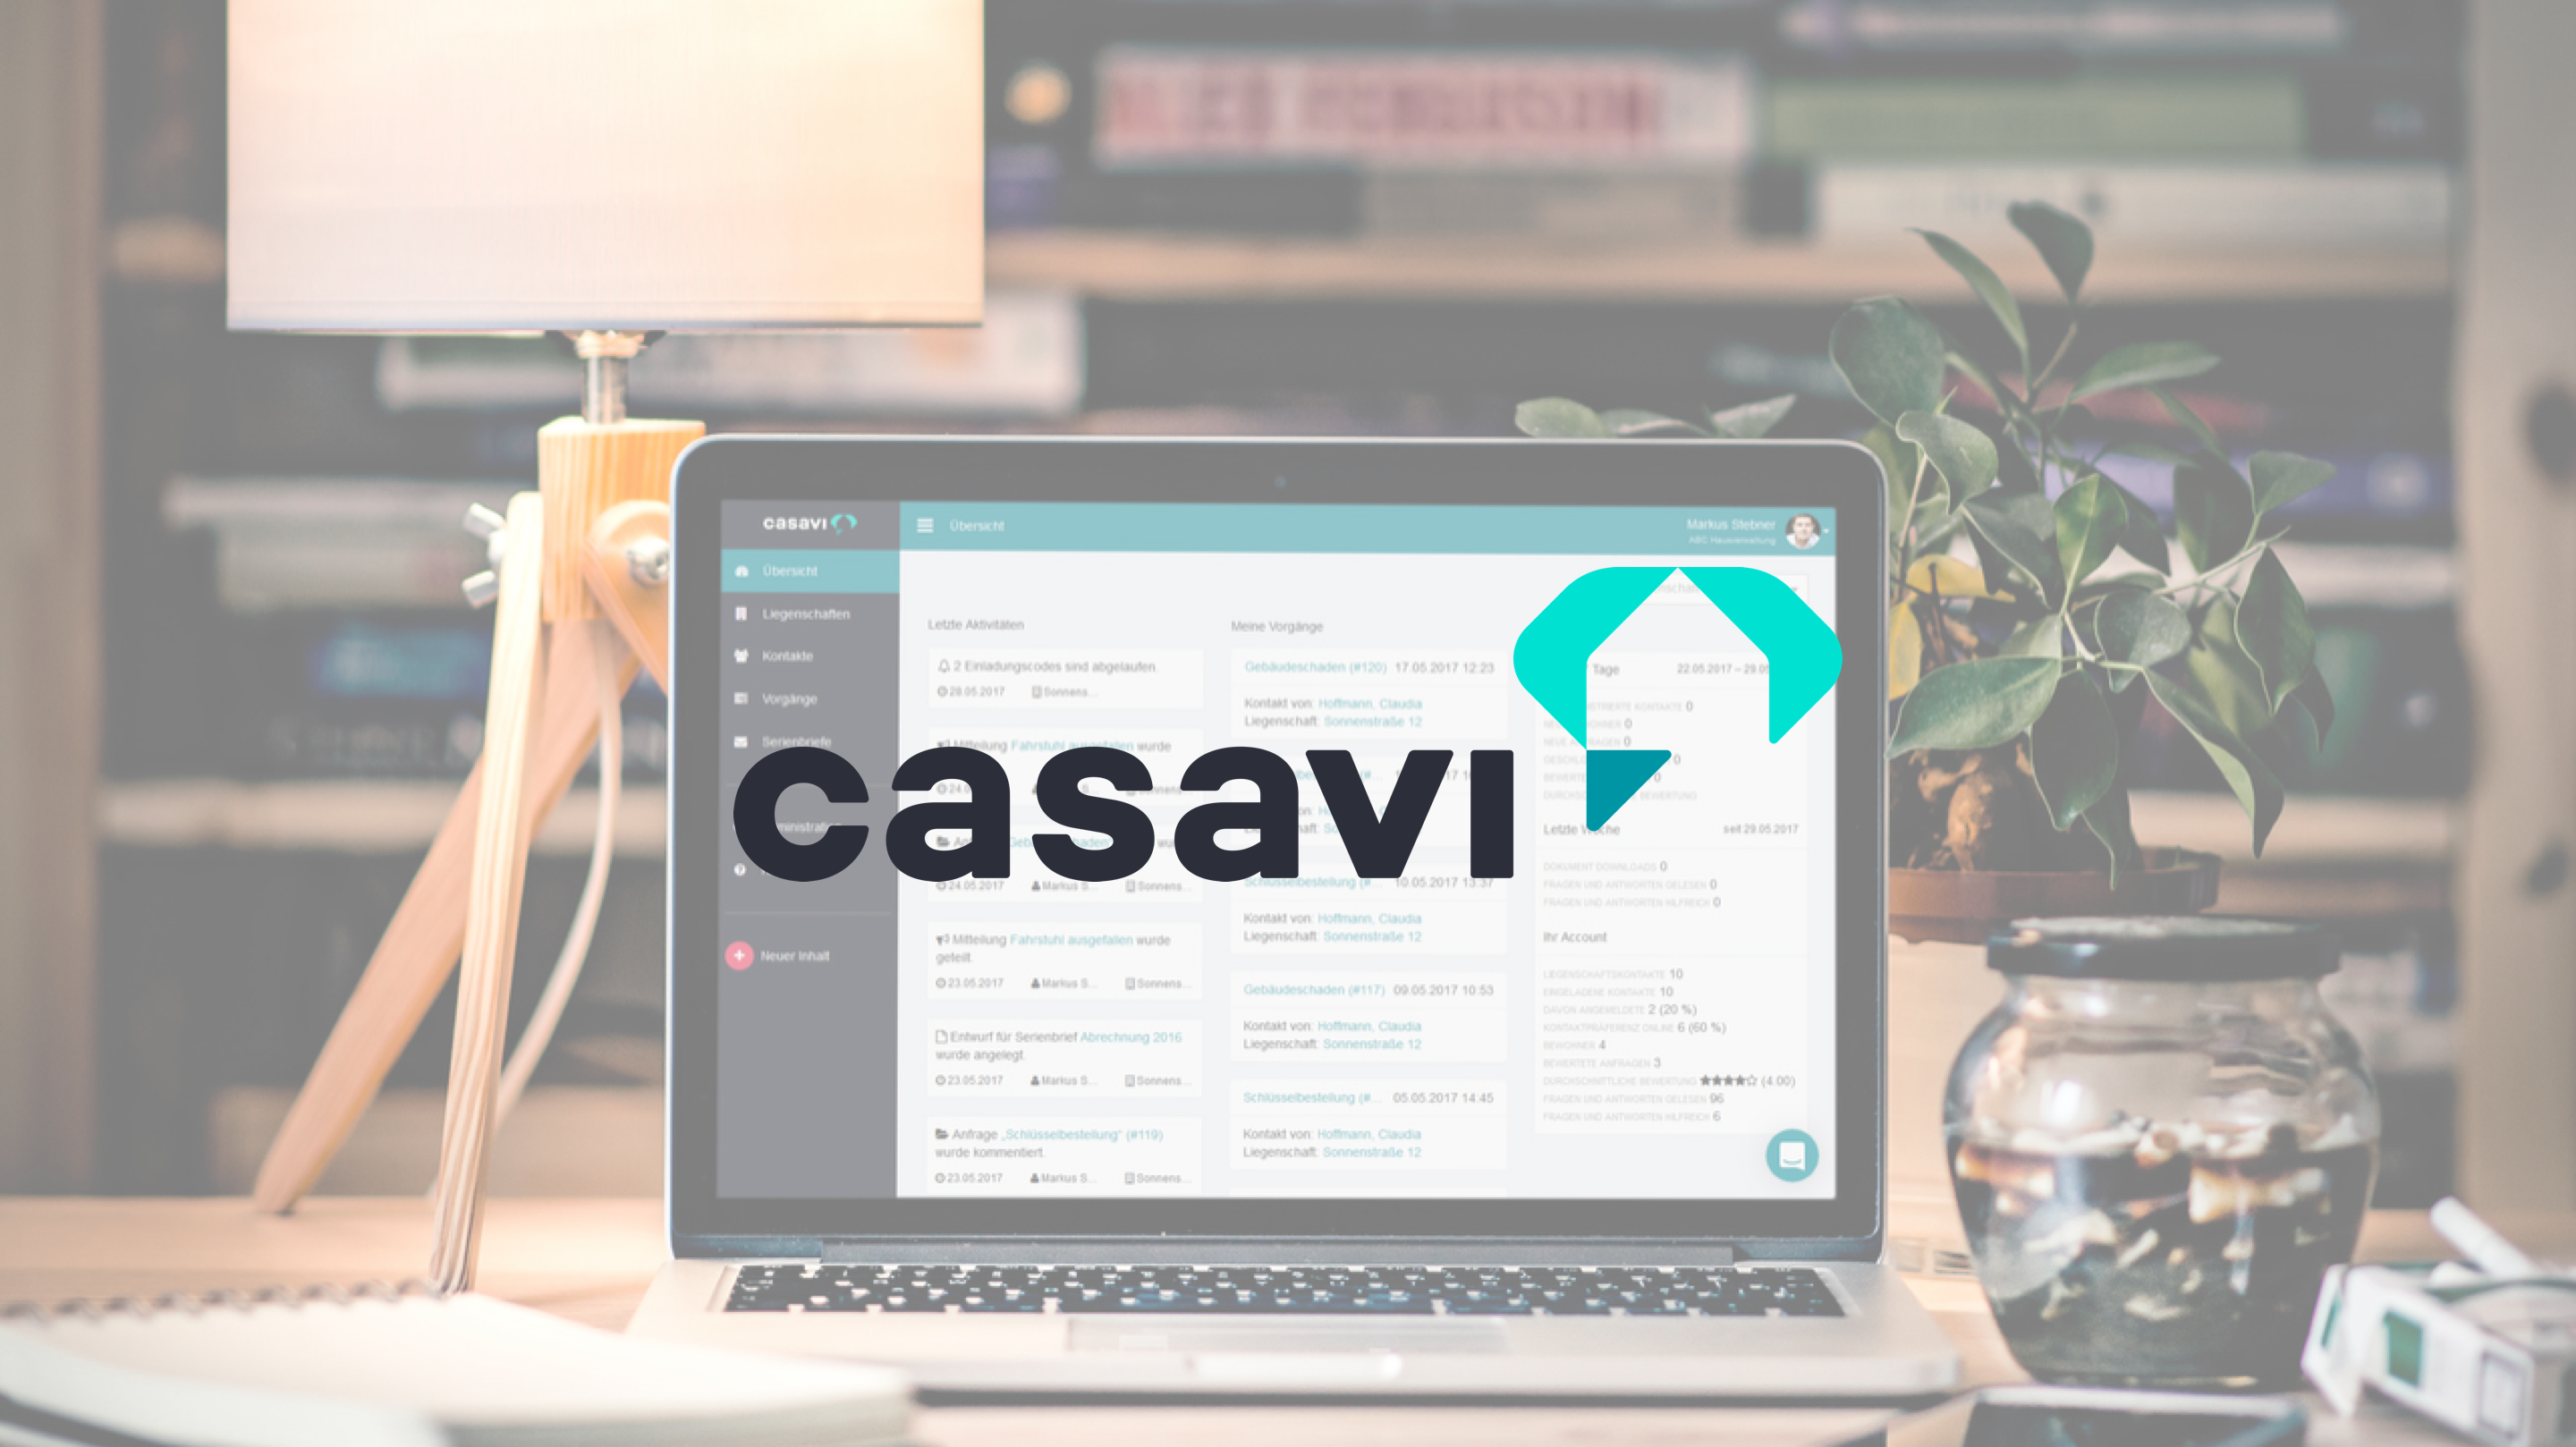 casavi ist ein PropTech-Unternehmen